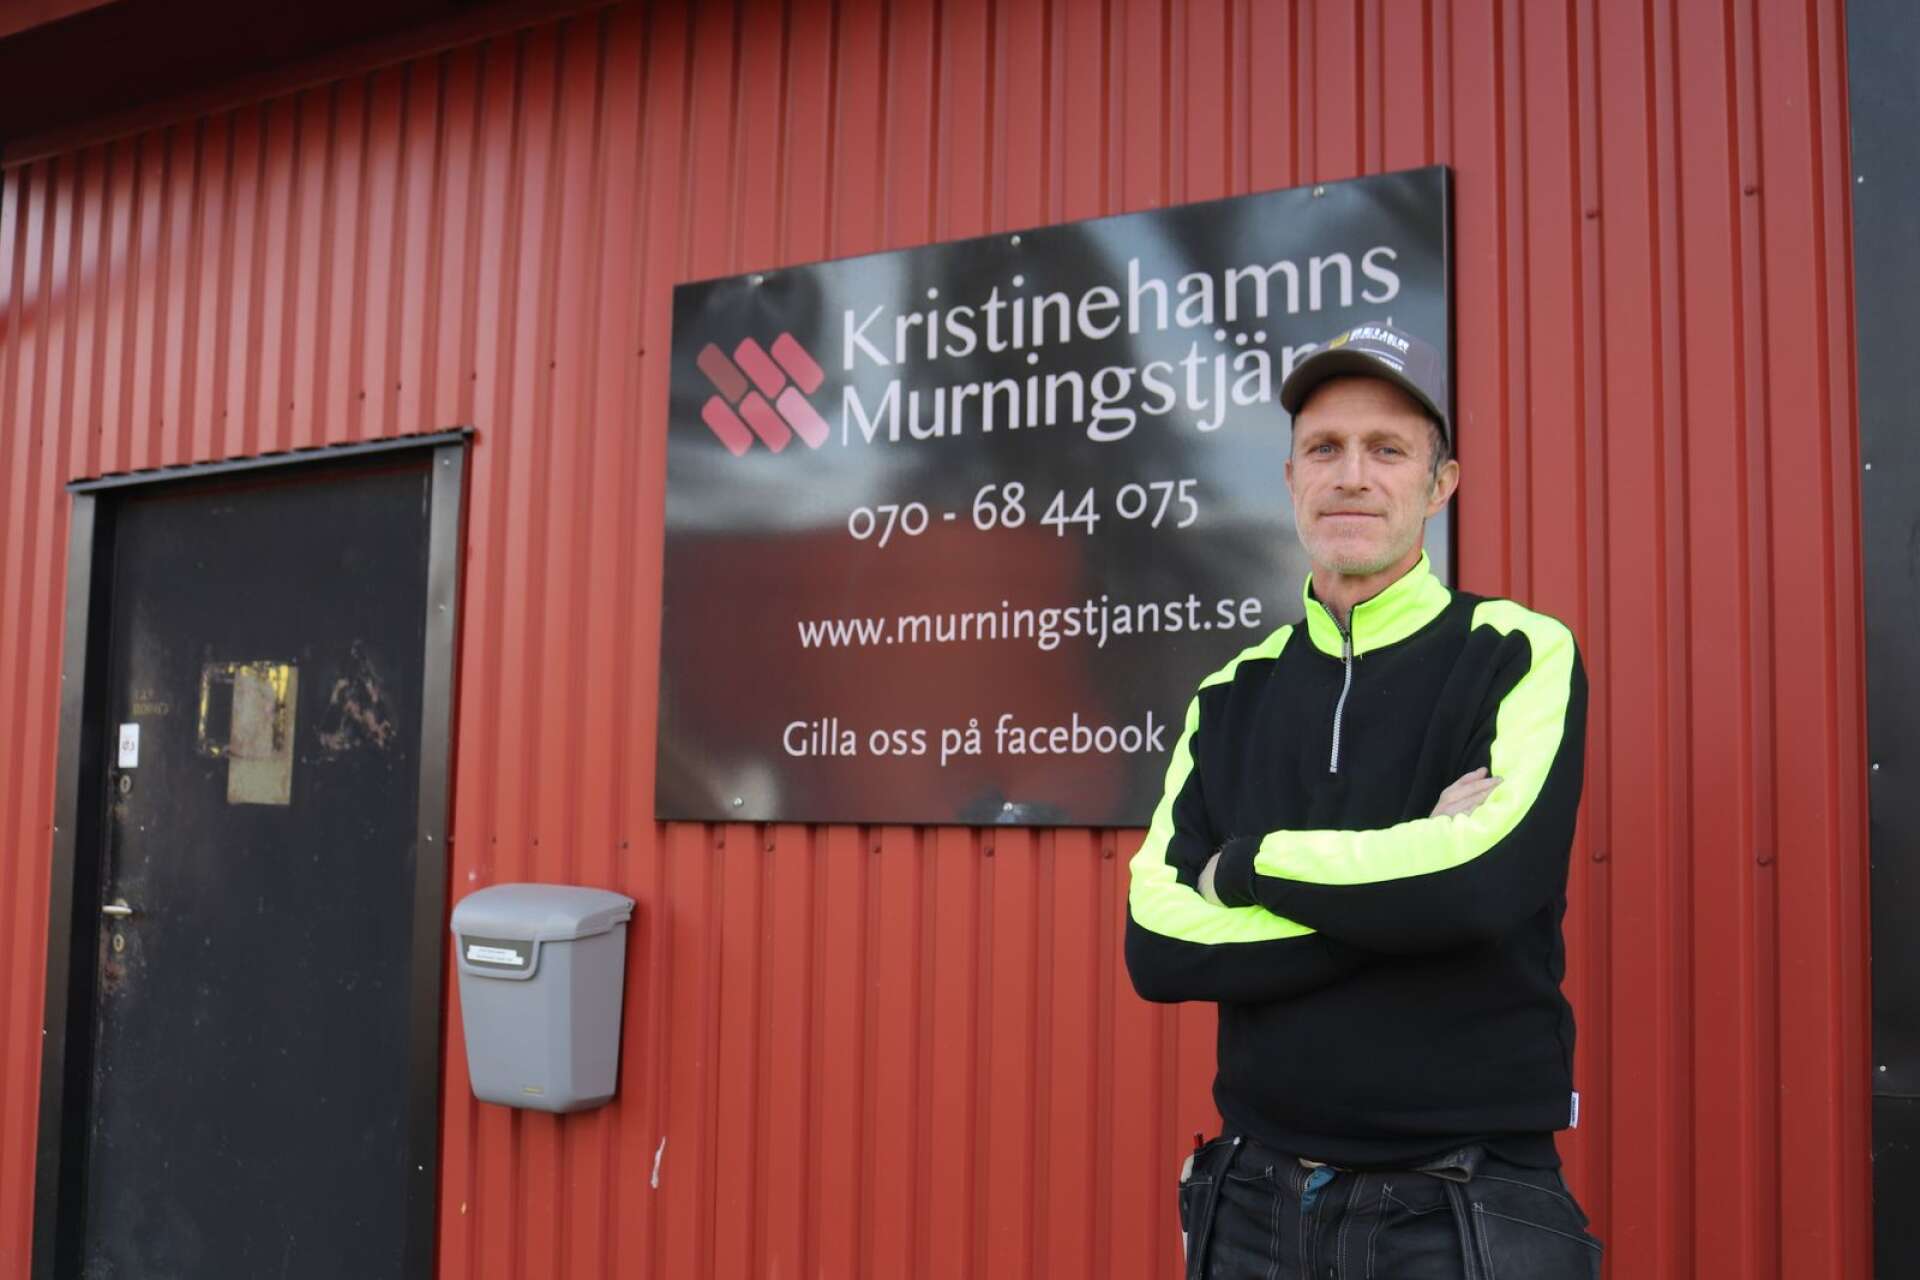 Magnus Melin har arbetat som murare i över 35 år. Sedan han startade eget företag för tolv år sedan har han inte sett ett sådant högt tryck på hans varor. De höga elpriserna kan vara en förklaring på den ökade efterfrågan.